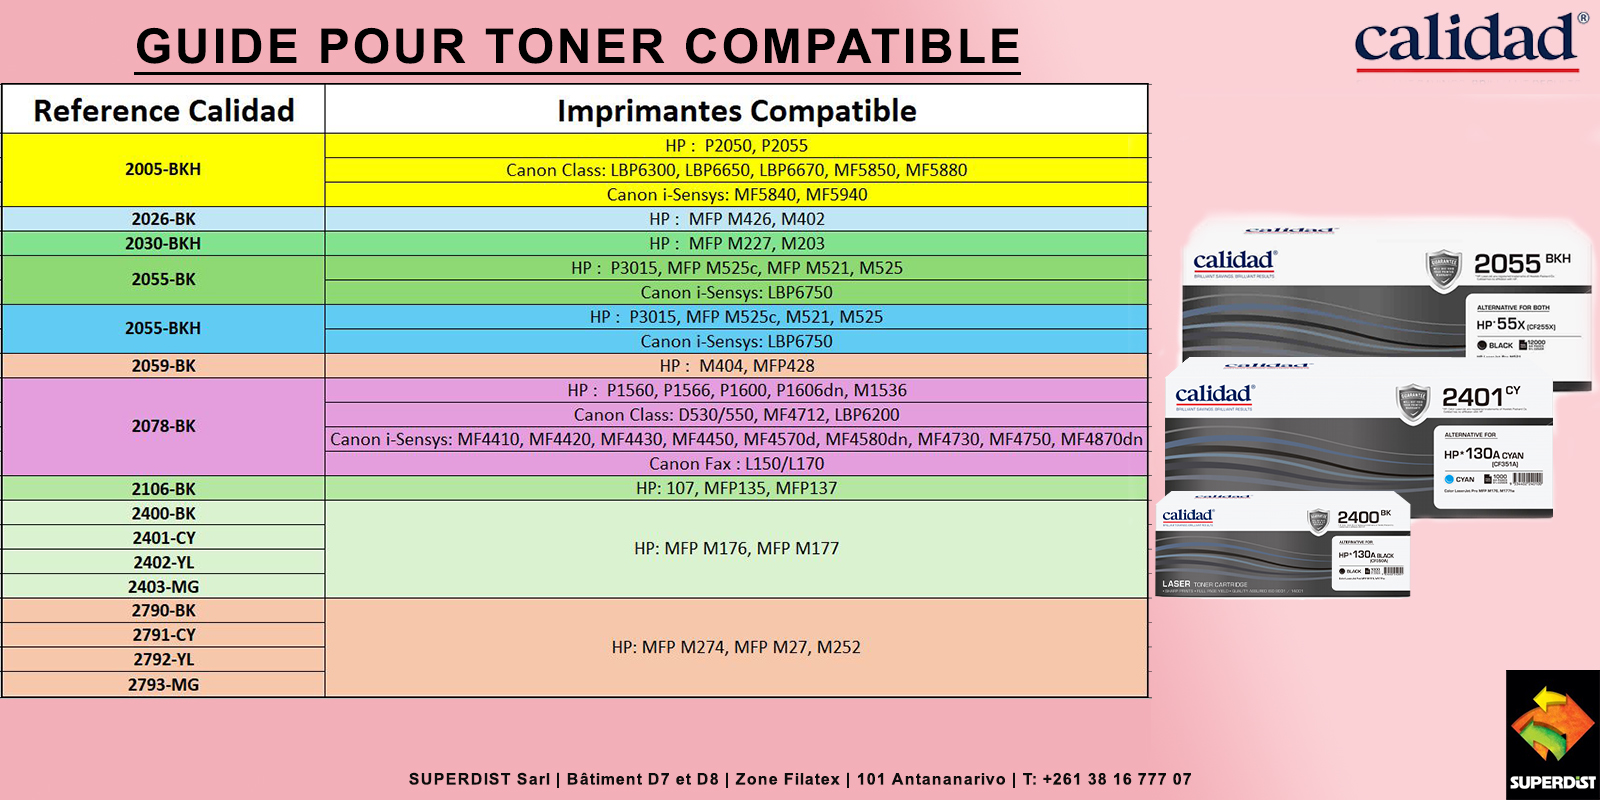 Guide pour toner compatible